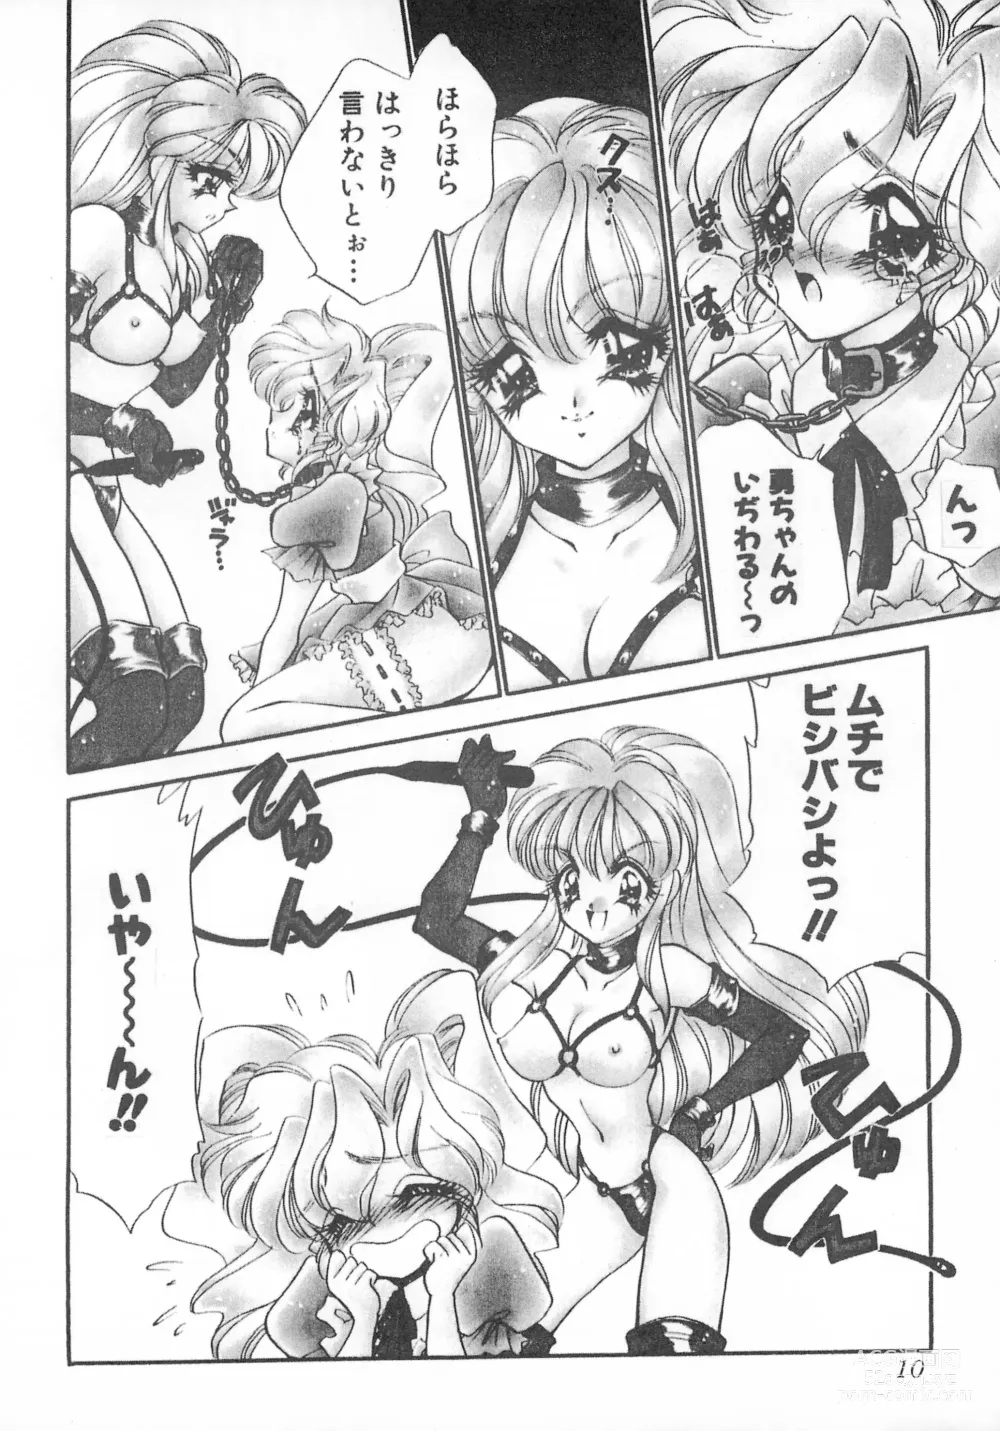 Page 10 of doujinshi MAX 6